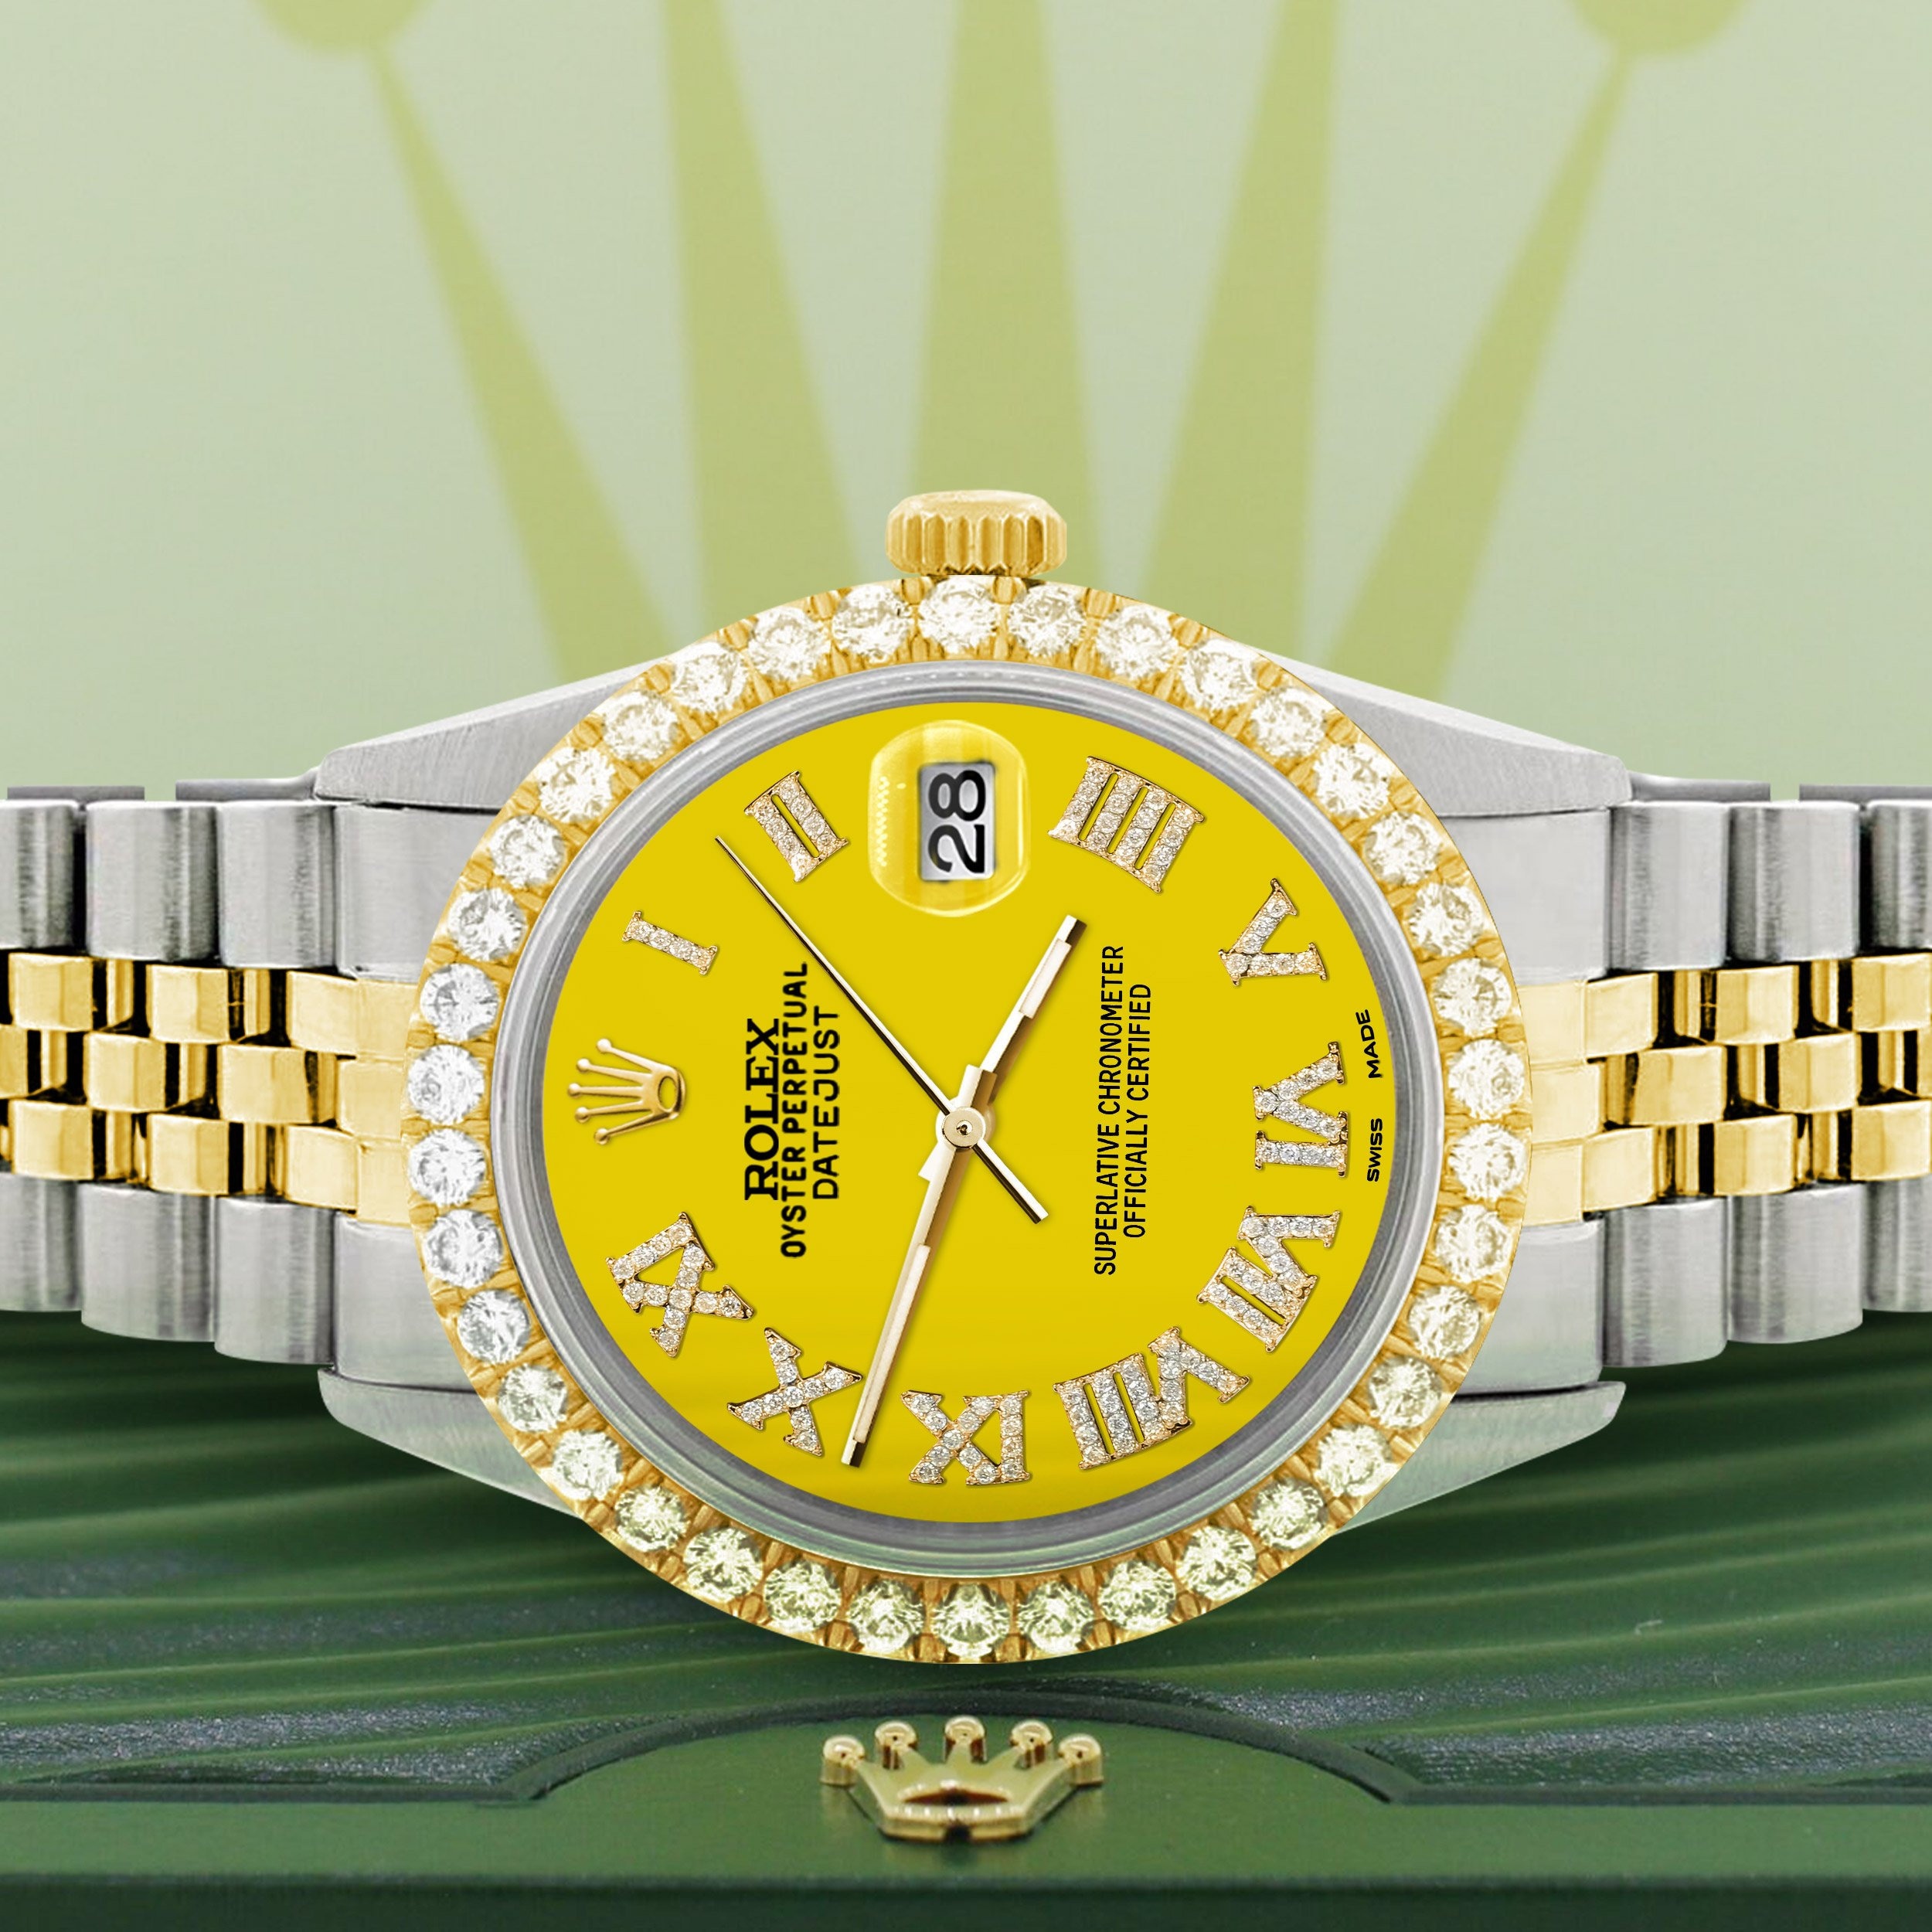 New Original Rolex Datejust 36mm with Certificate Sieraden Horloges Horloges Herenhorloges 